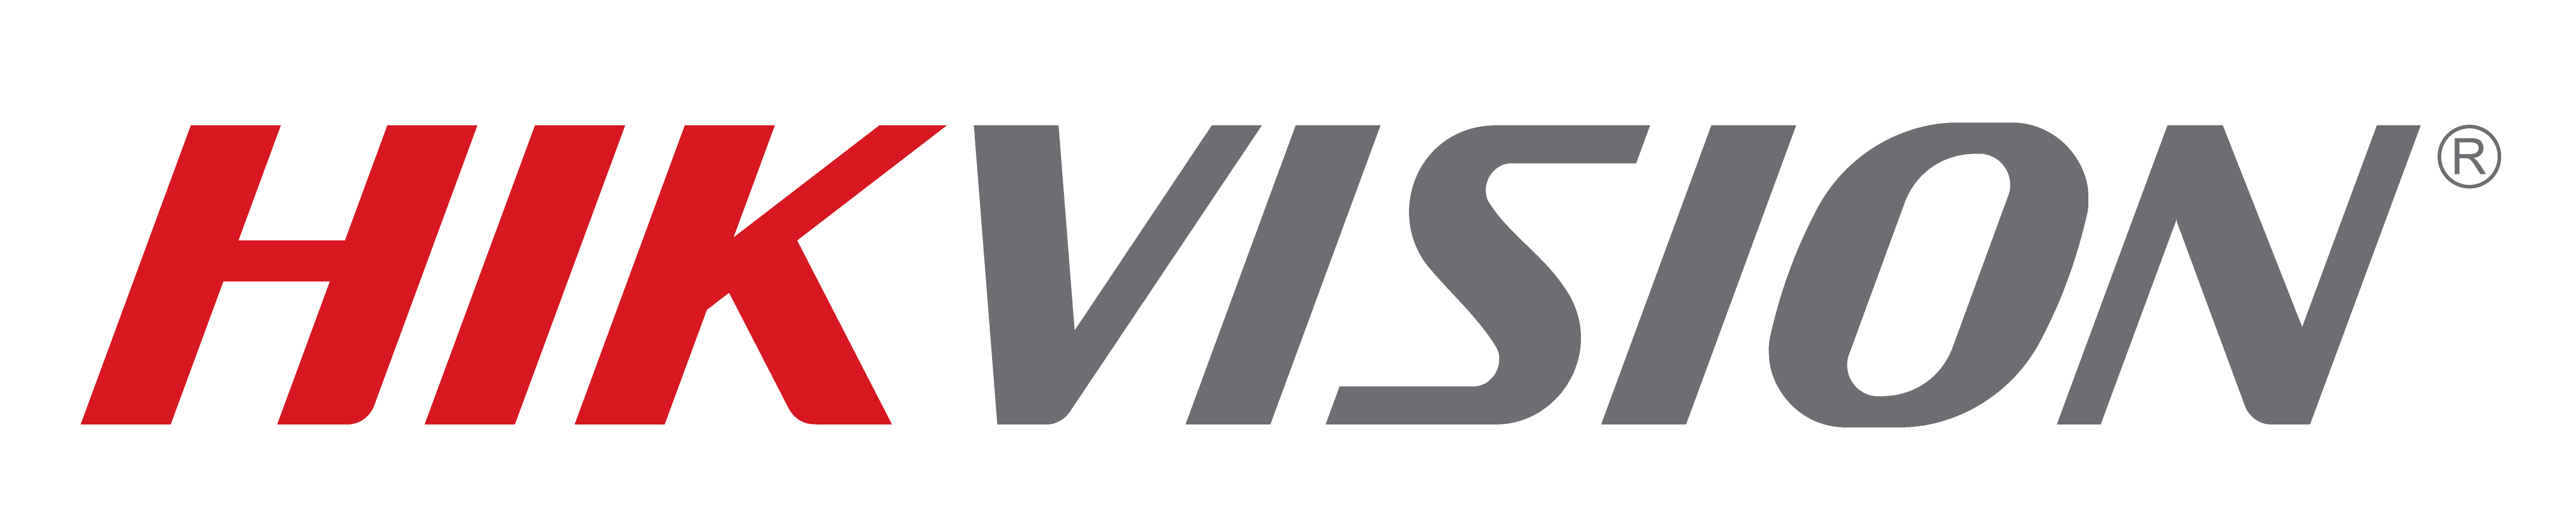 Hikvision Banner Logo